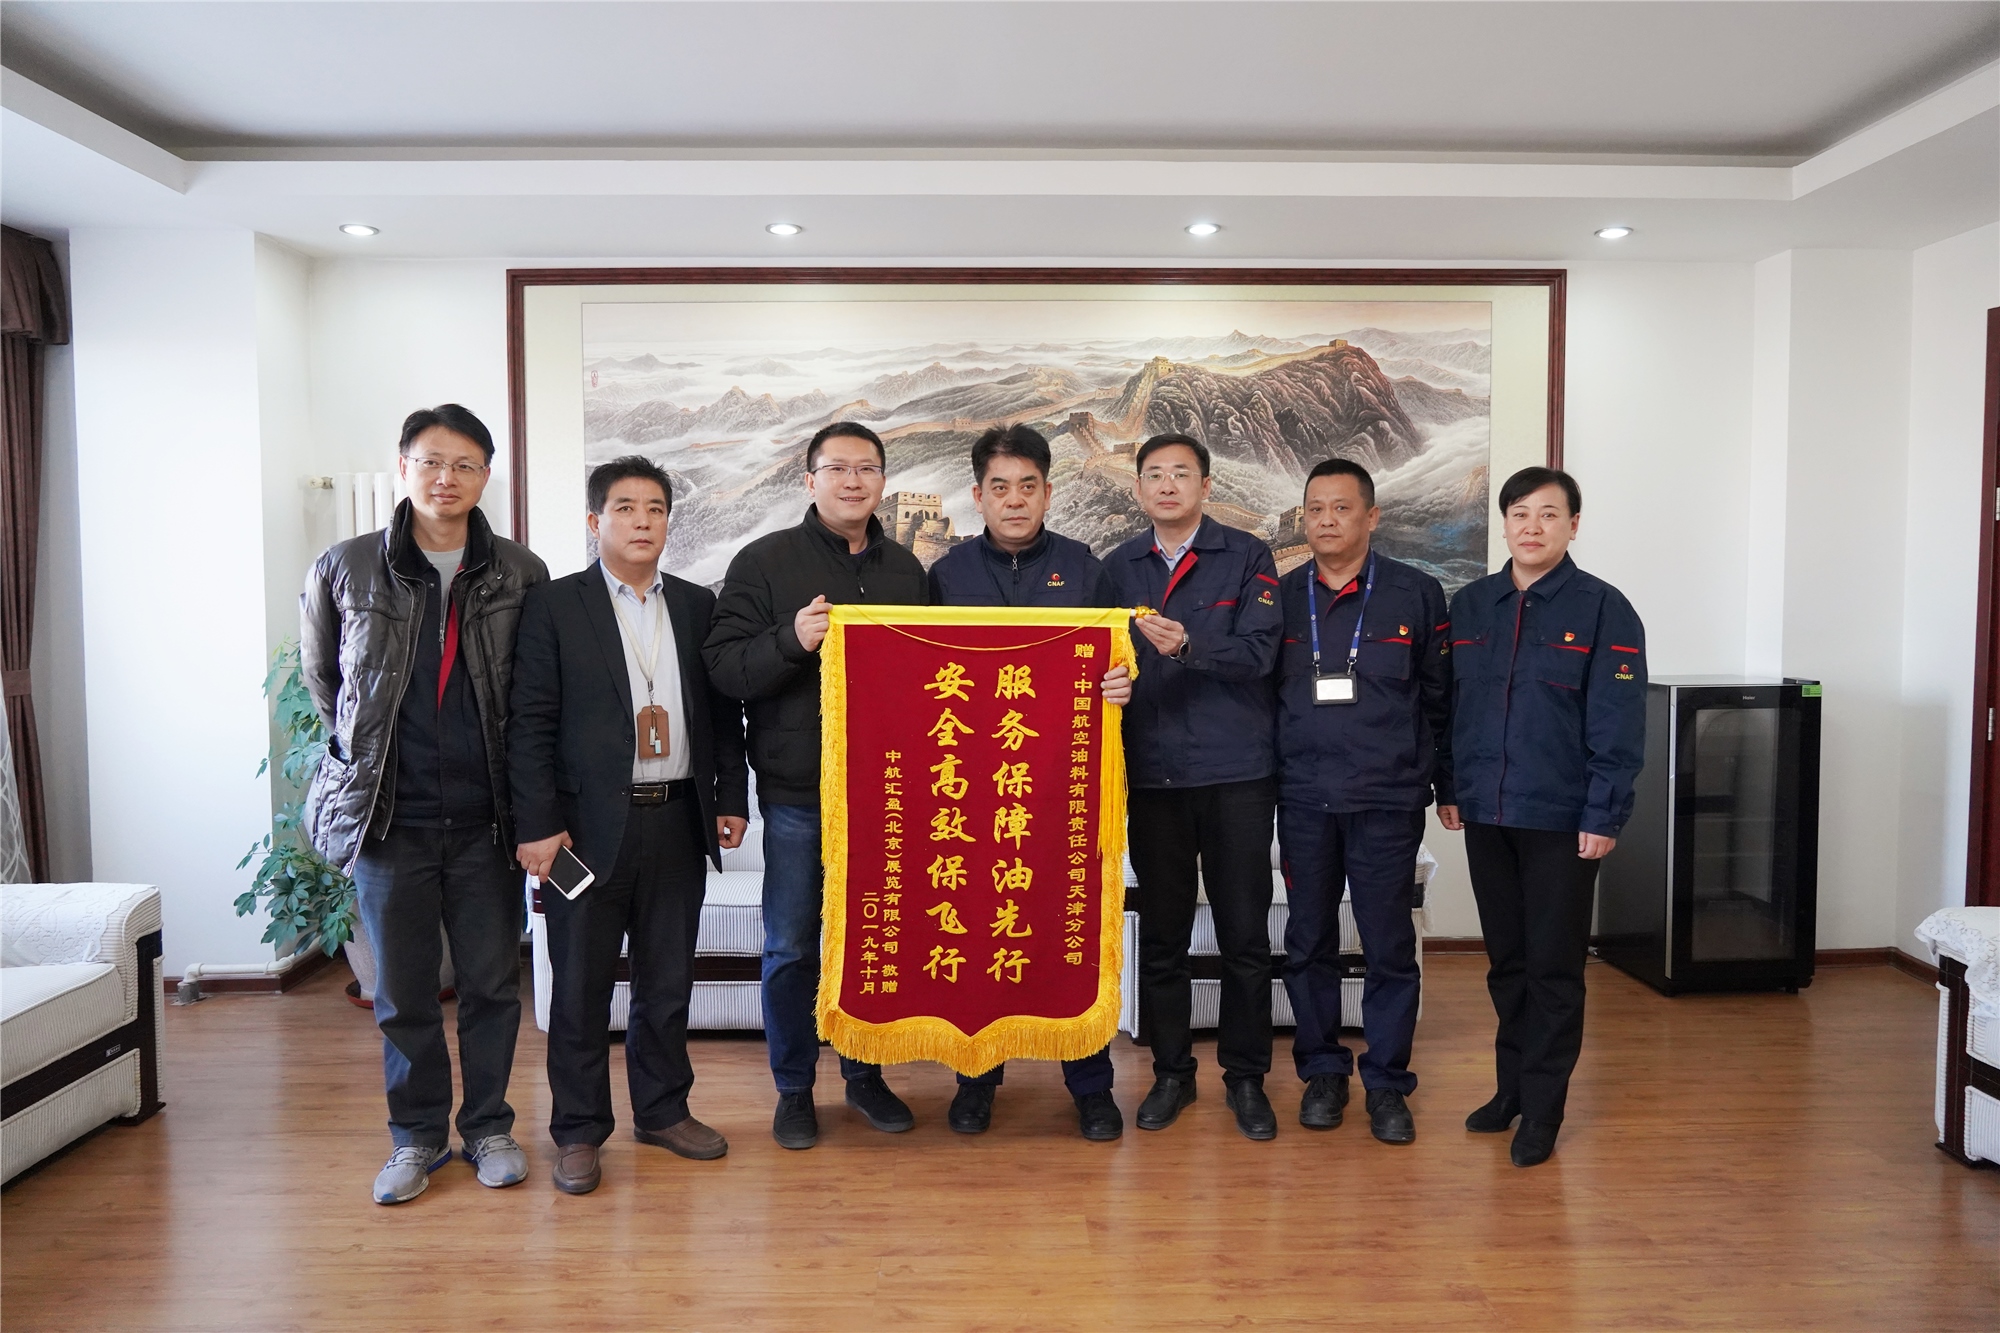 中国航油天津分公司喜收第五届天津直升机博览会感谢信及锦旗